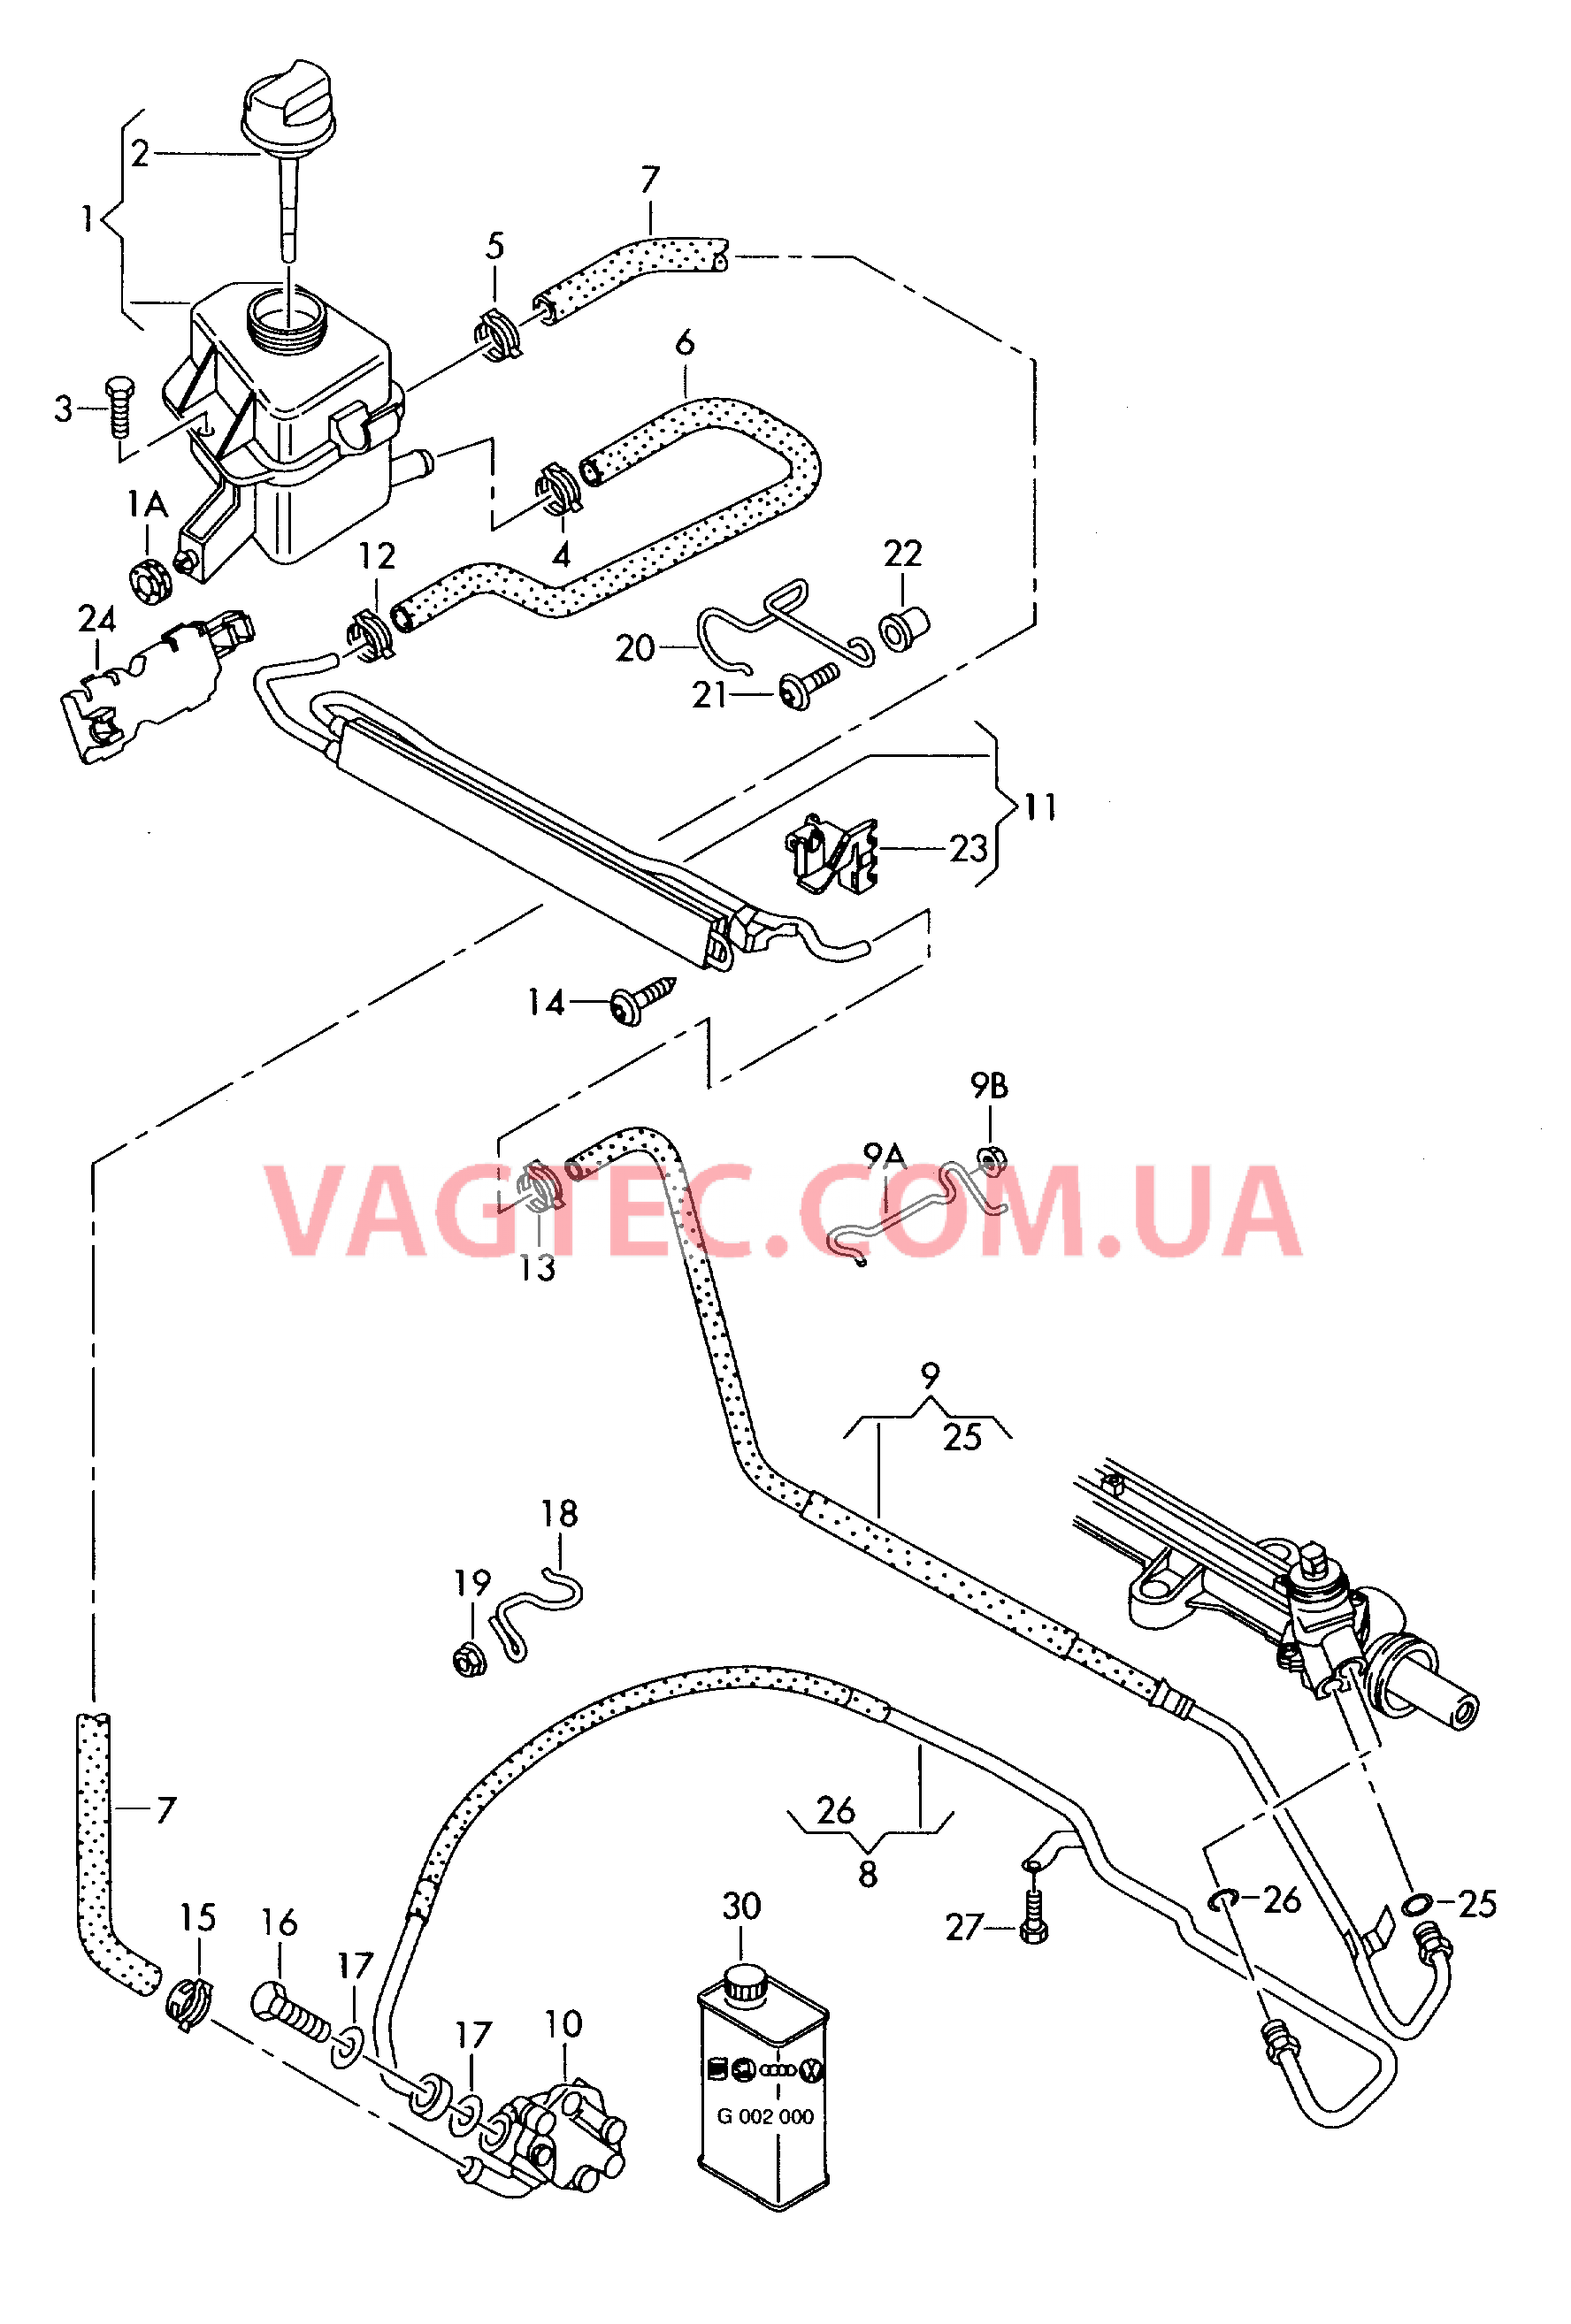 Масляный бачок с соединительными деталями, шлангами  для ГУРа  для VOLKSWAGEN Transporter 2006